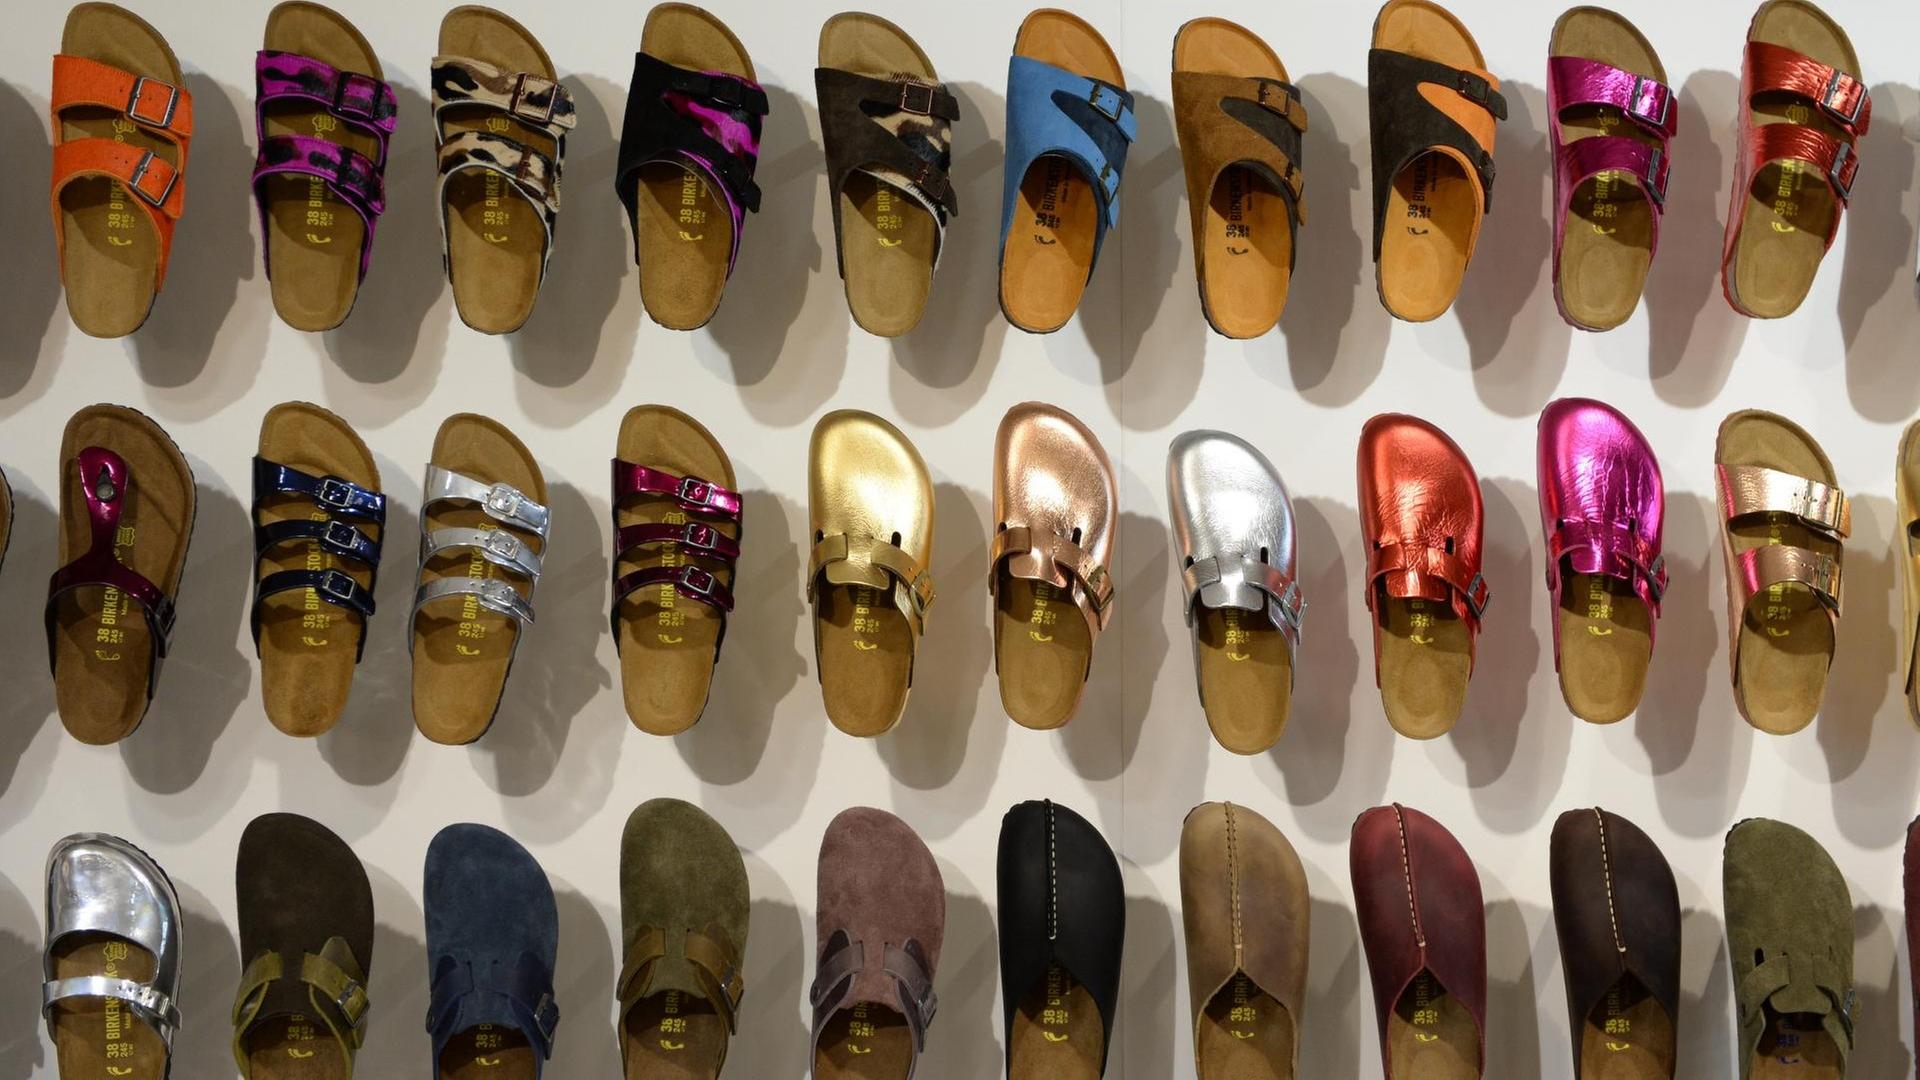 Schuhe der Herbst/Winter-Kollektion 2014 von Birkenstock hängen während der Modemesse Bread & Butter in Berlin an einer Wand.